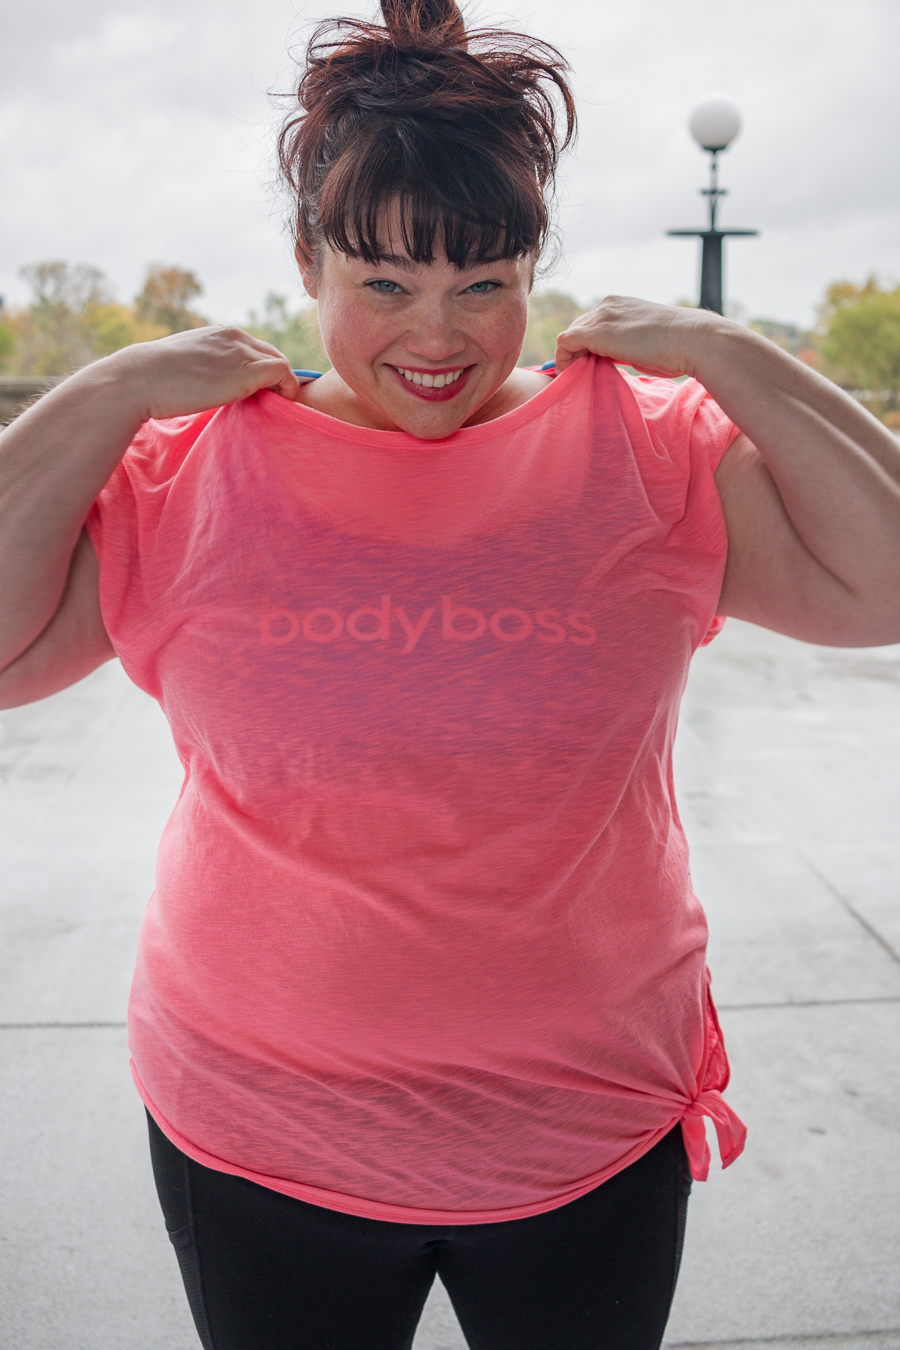 BodyBoss, BodyBoss Method, Fat but Fit, BodyBoss Review, Plus Size Style, Plus Size Fashion, Style Plus Curves, Chicago Blogger, Chicago Plus Size Blogger, Plus Size Blogger, Amber McCulloch